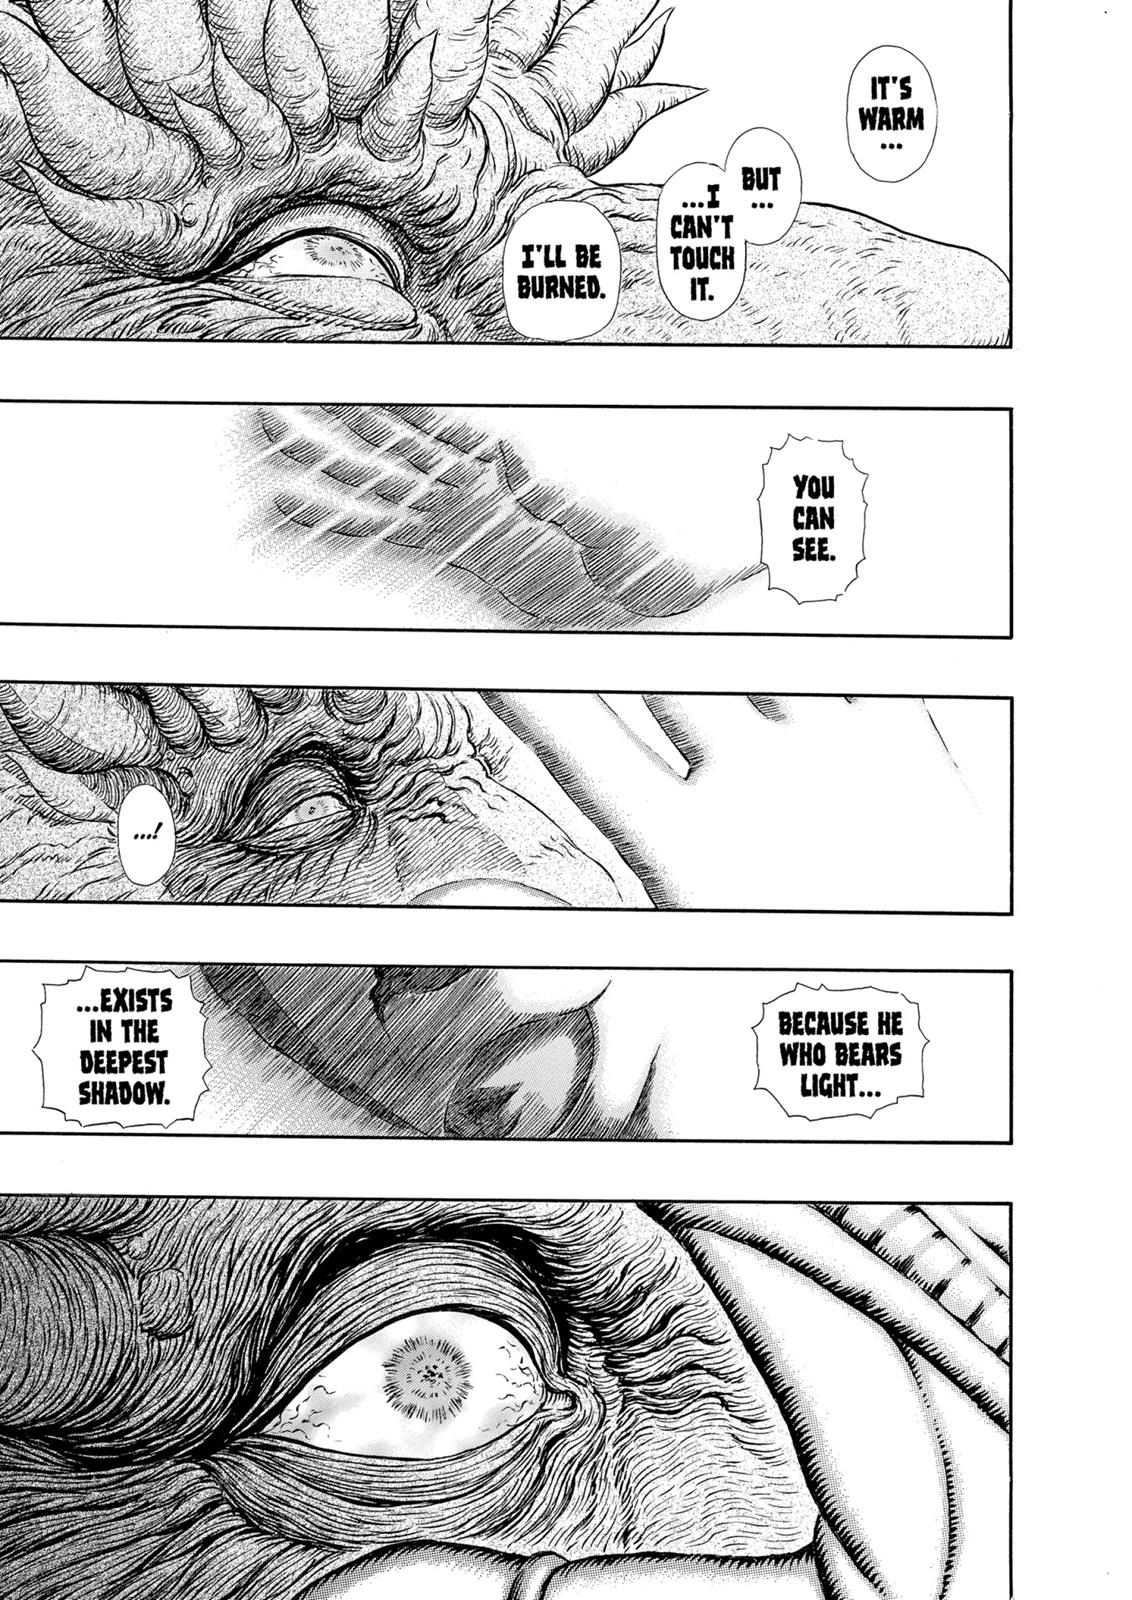 Berserk Manga Chapter 303 image 12